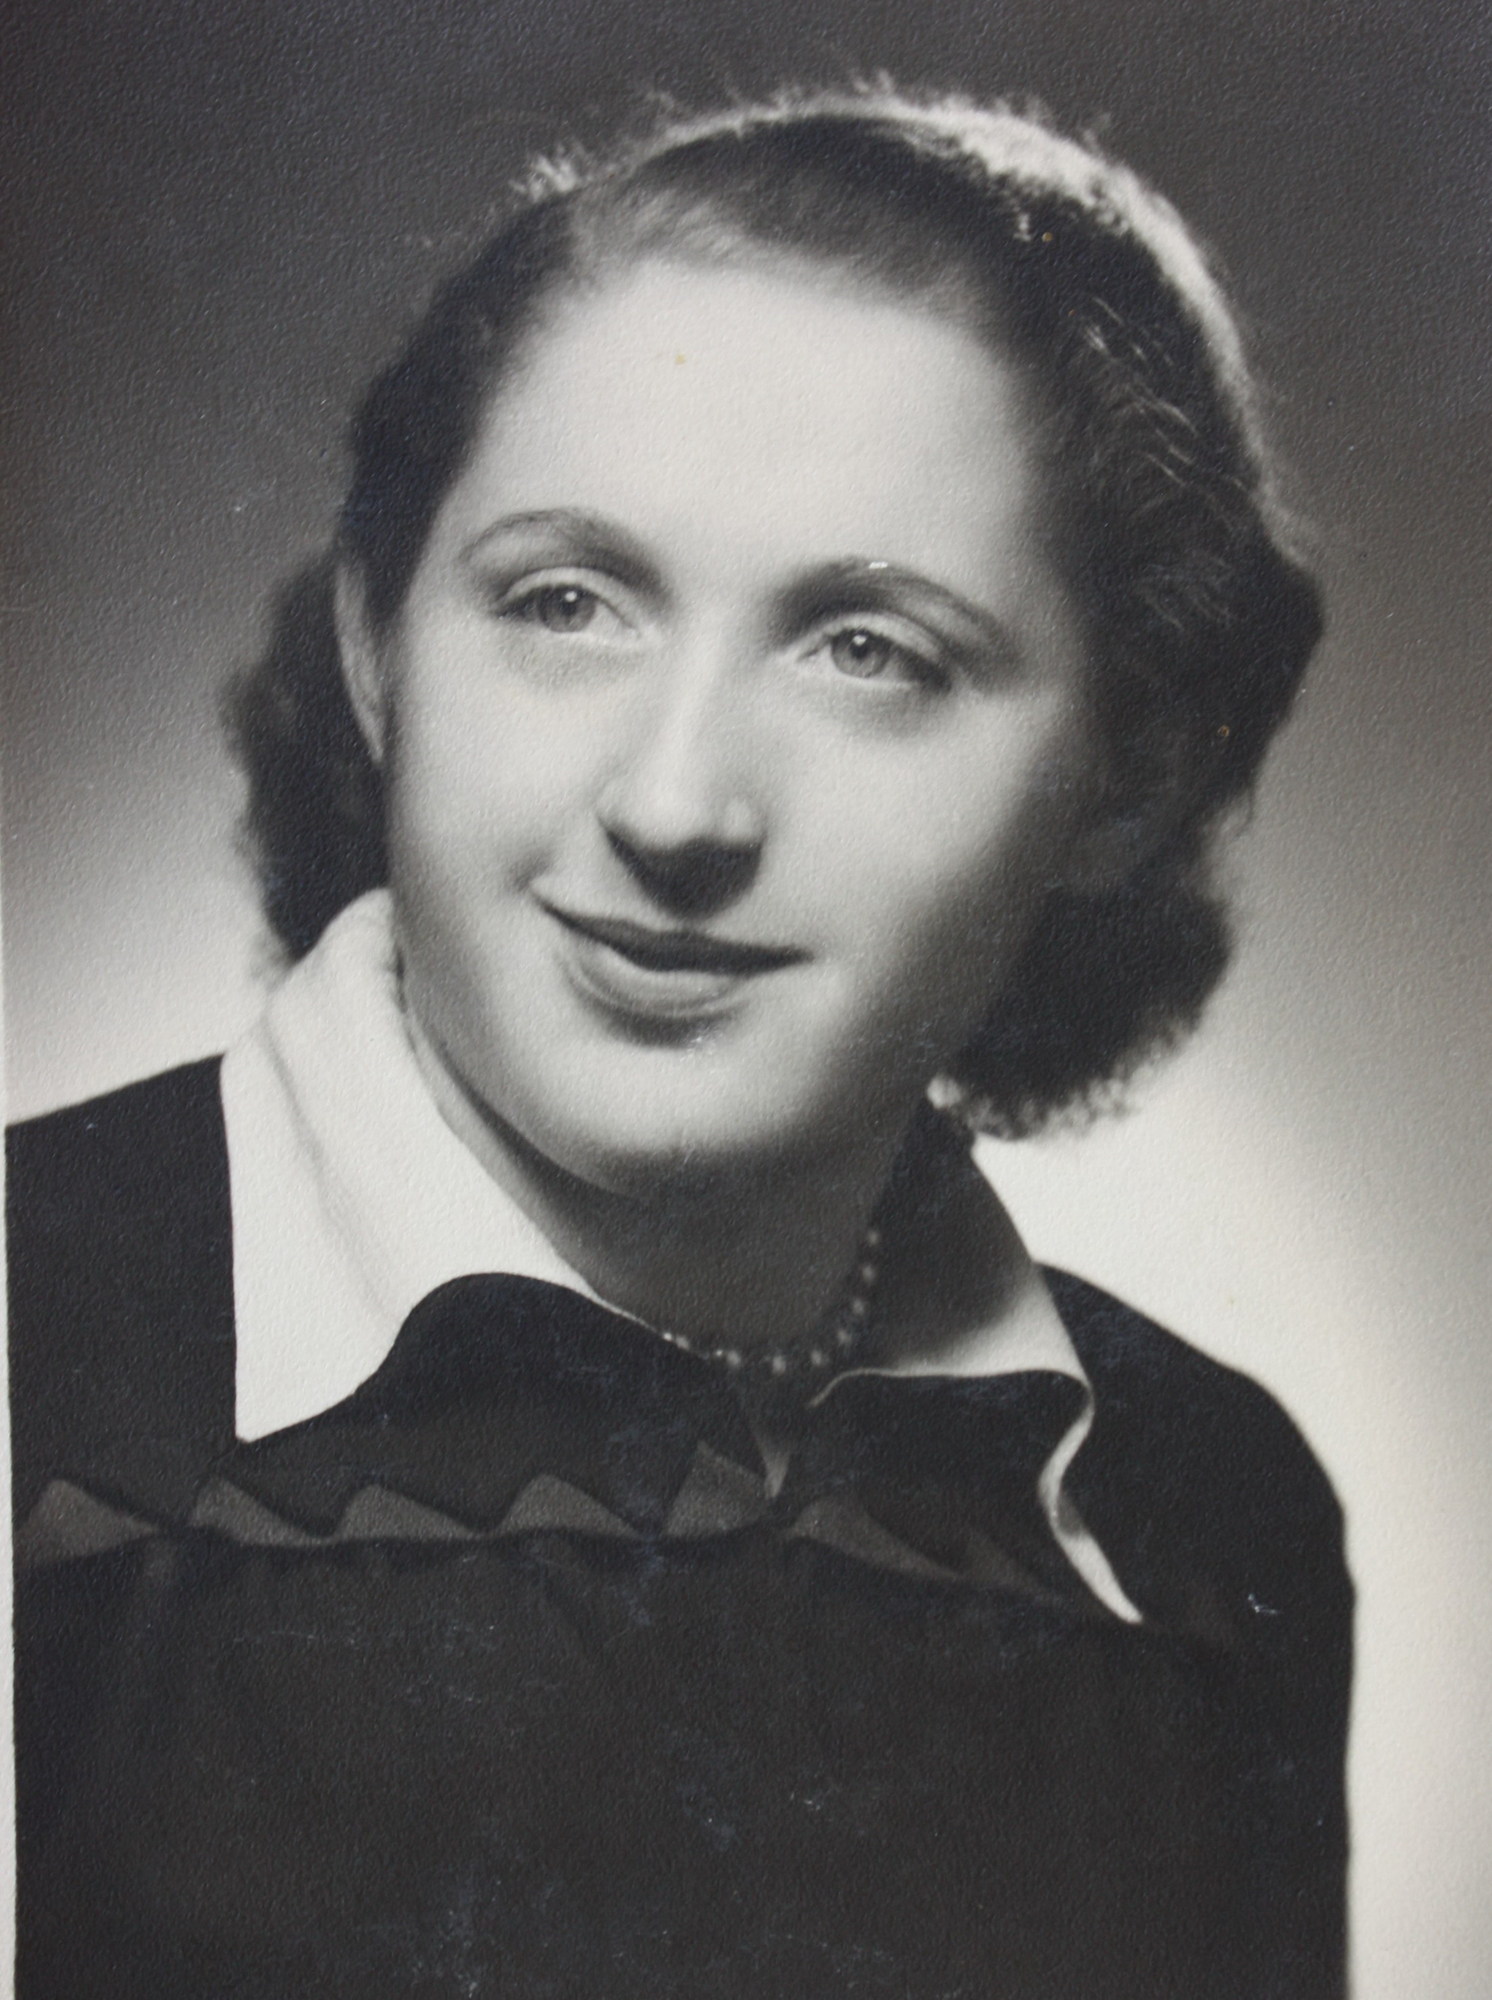 In 1946